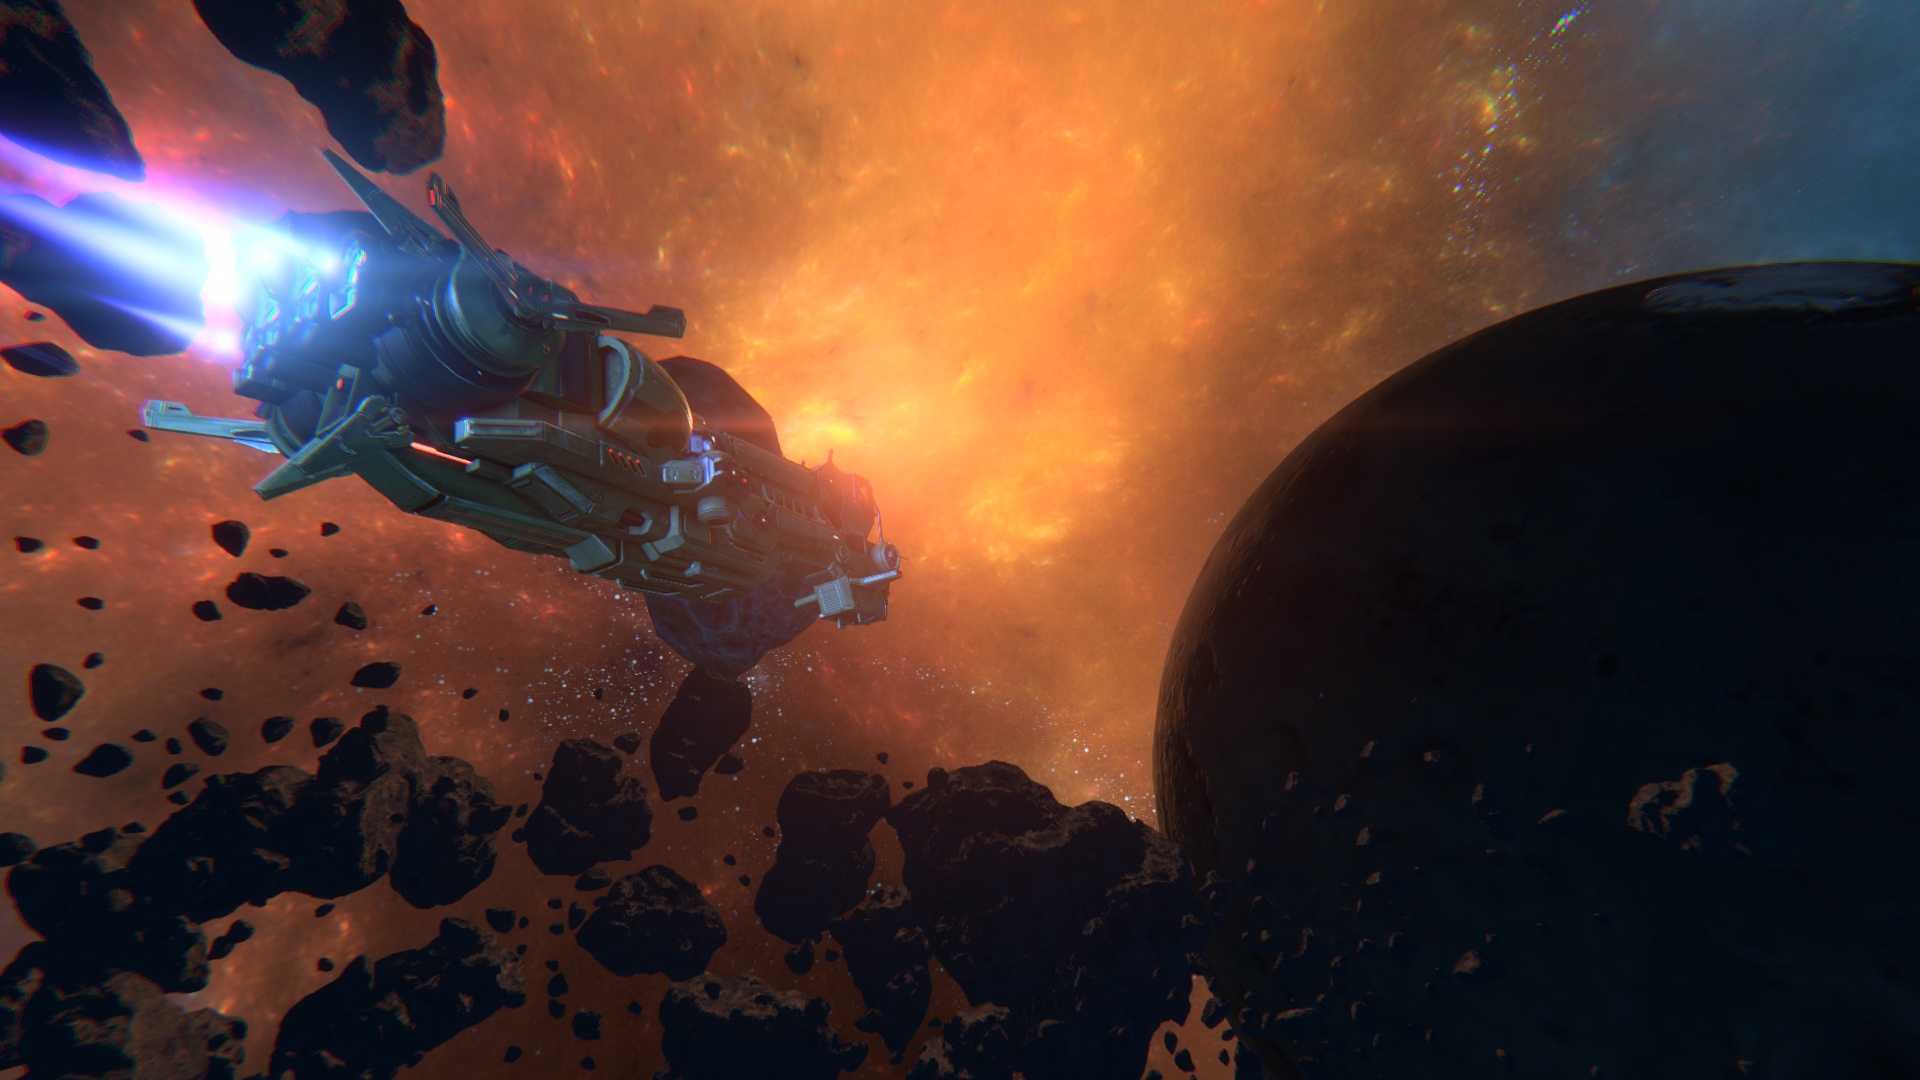 Star Conflict screenshot